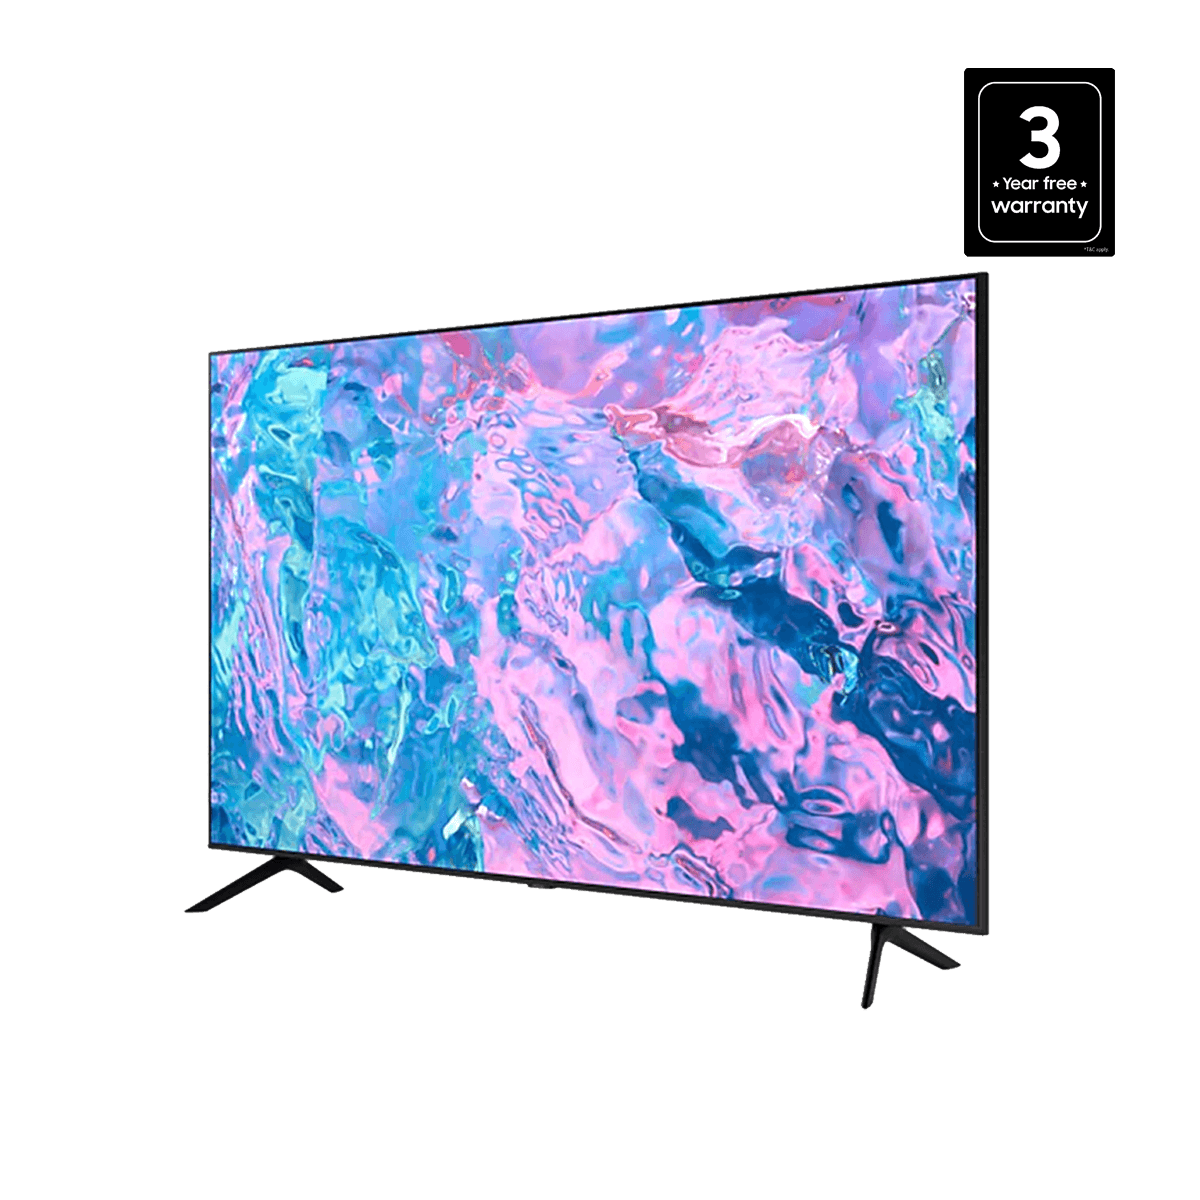 Samsung UA43CU7700 43-inch UHD 4K Smart TV Price Nepal